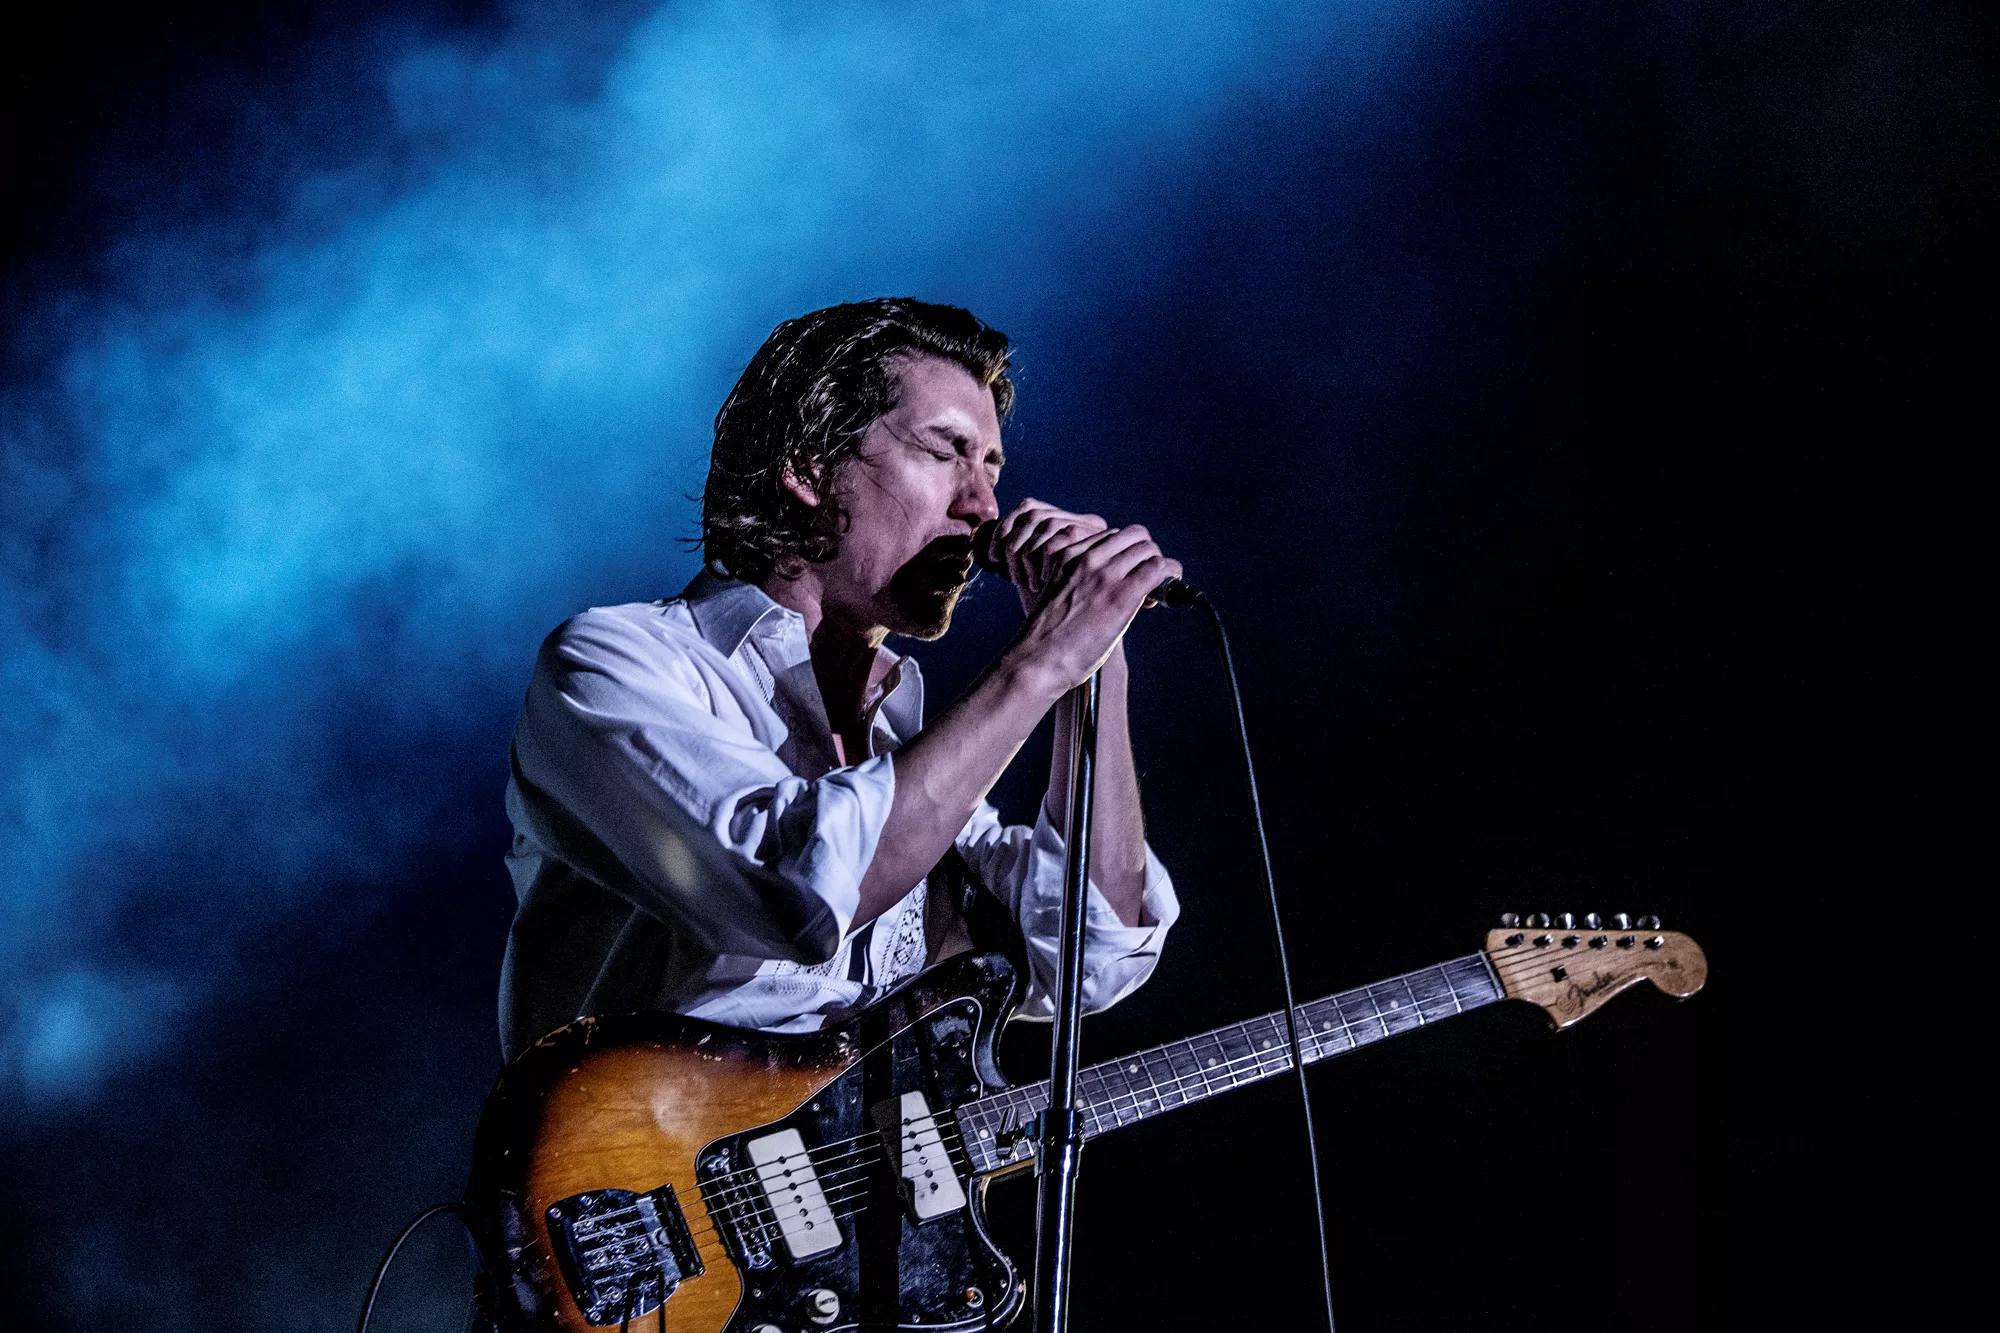 Se Arctic Monkeys fremføre cover af The White Stripes